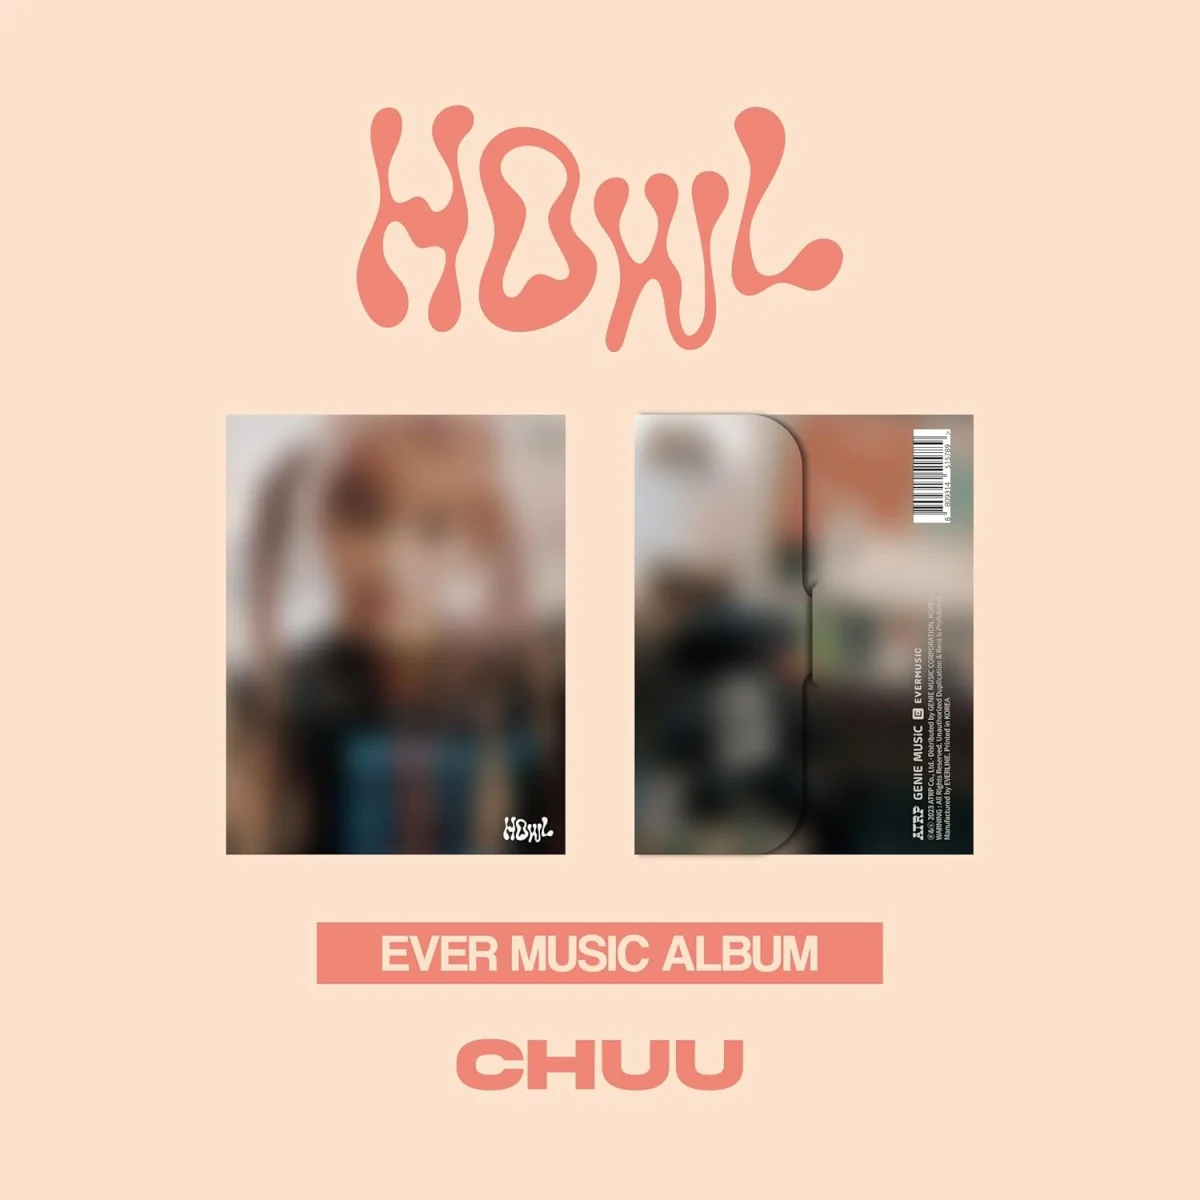 CHUU - Howl (EVER MUSIC ALBUM) (1st Mini Album) 